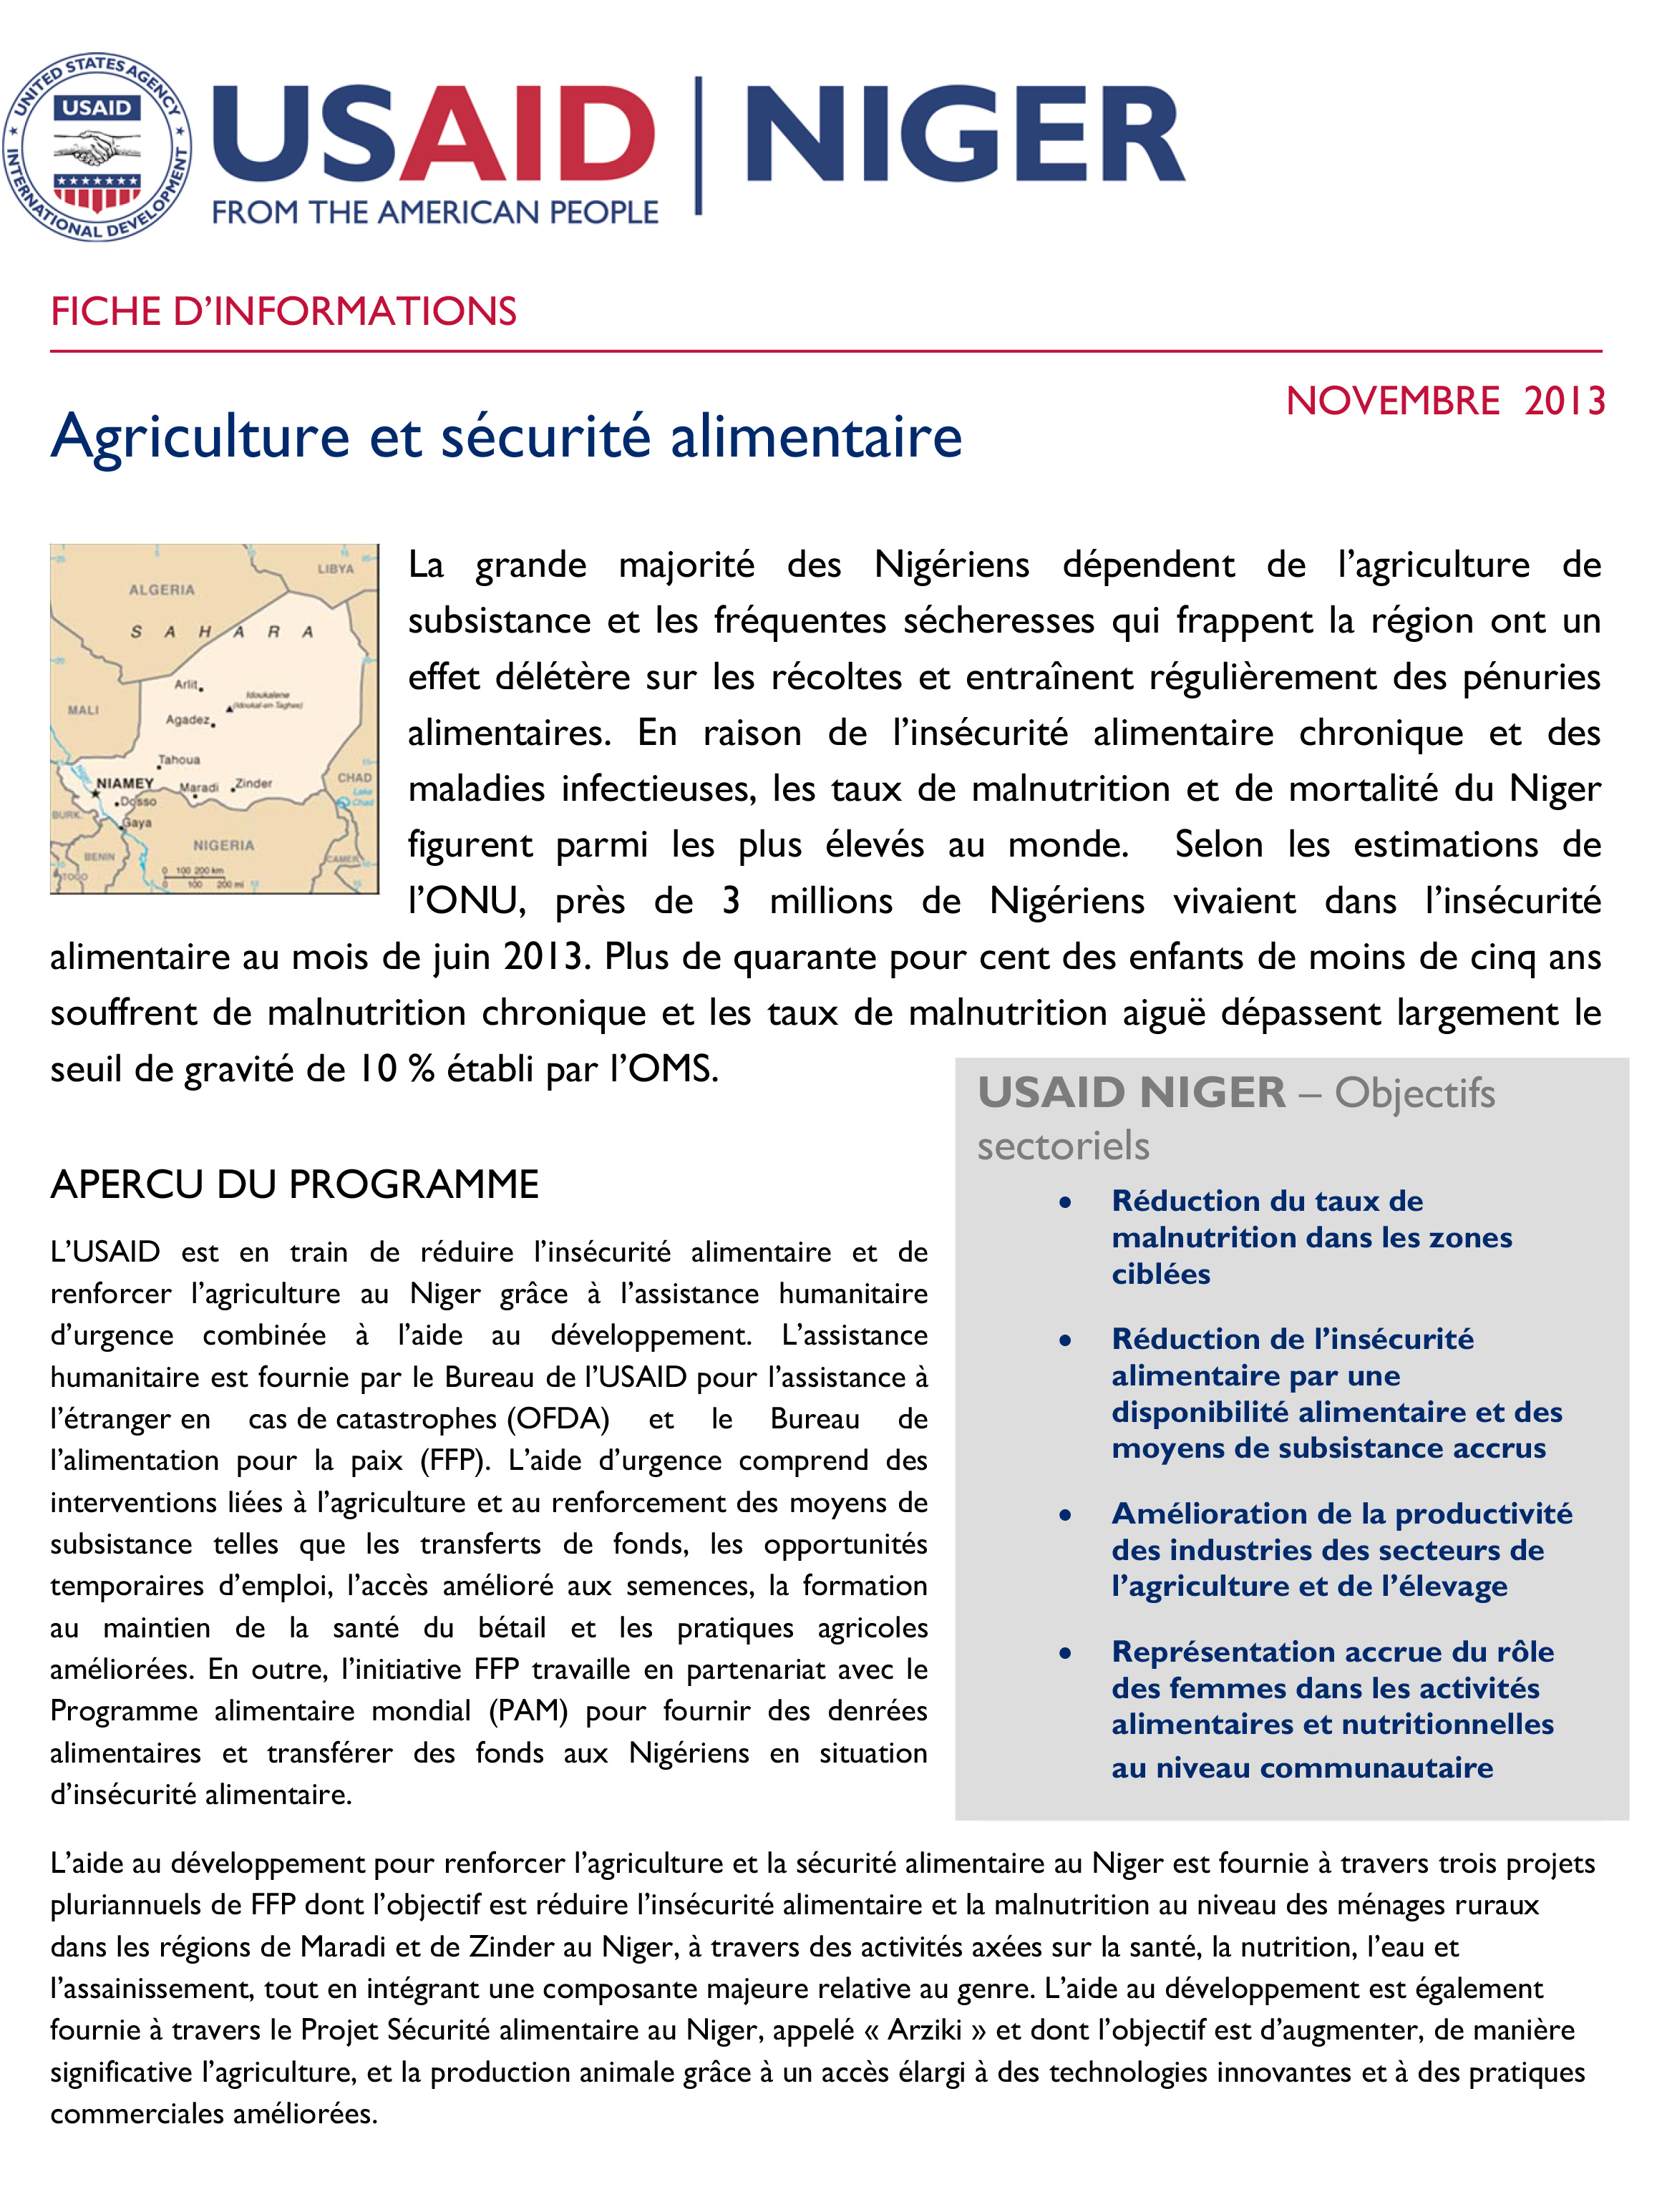 Une fiche d'informations téléchargeable et imprimable sur les projets agriculture et sécurité alimentaire de l'USAID au Niger.